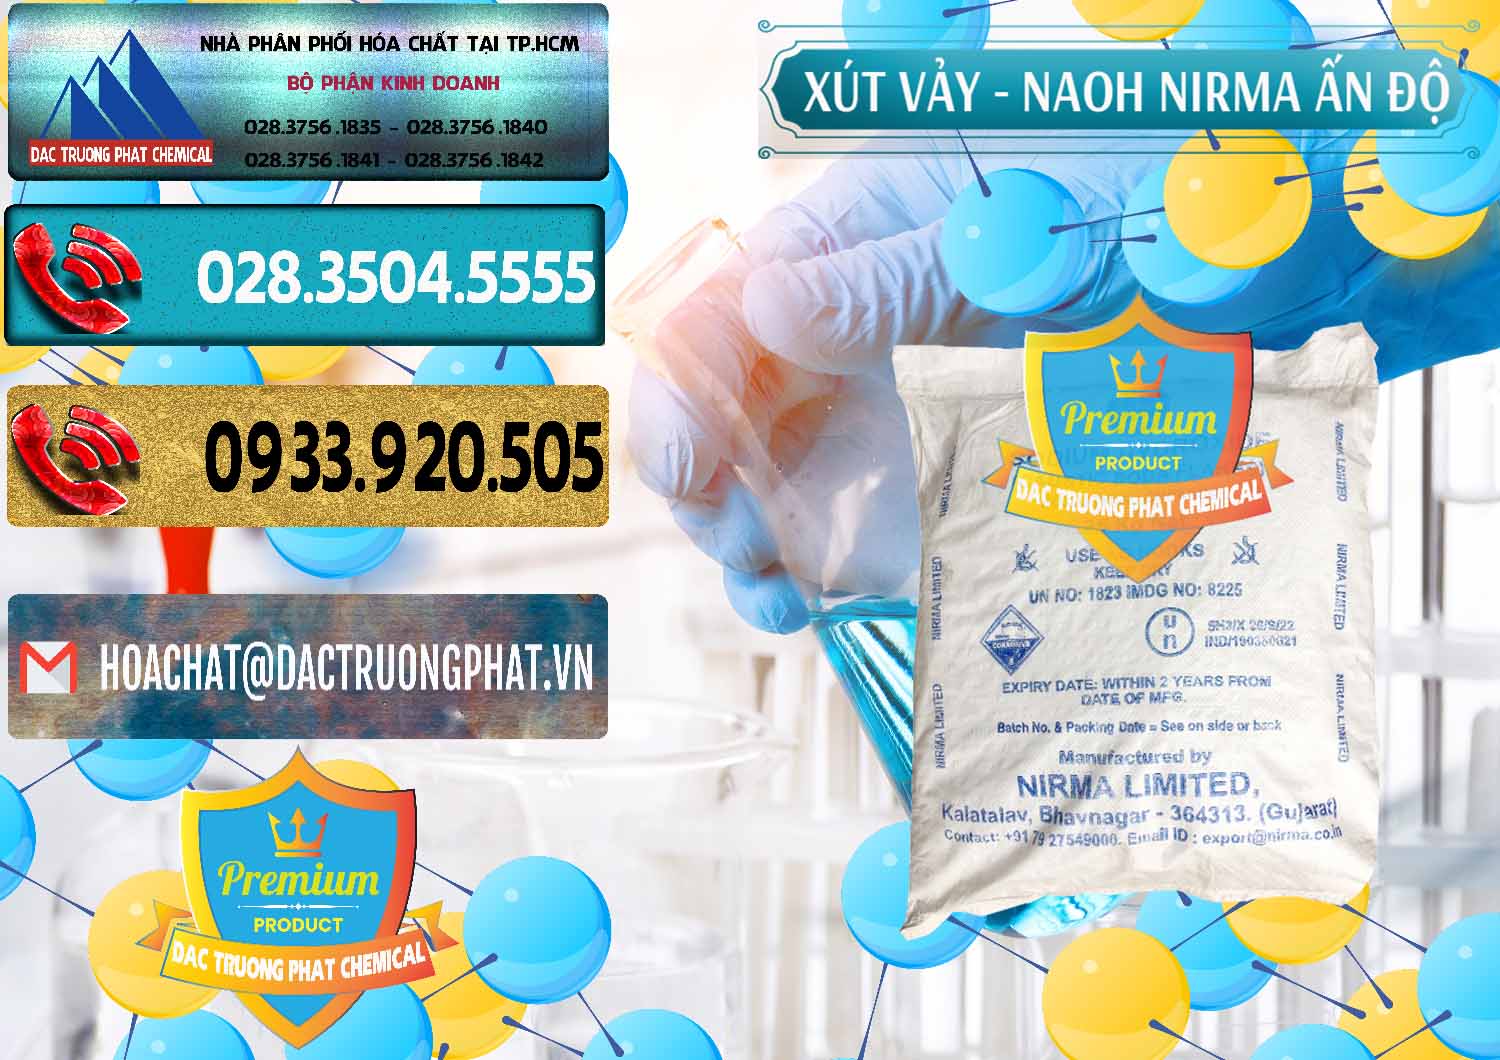 Cty chuyên cung ứng ( bán ) Xút Vảy - NaOH Vảy Nirma Ấn Độ India - 0371 - Chuyên cung ứng - phân phối hóa chất tại TP.HCM - hoachatdetnhuom.com